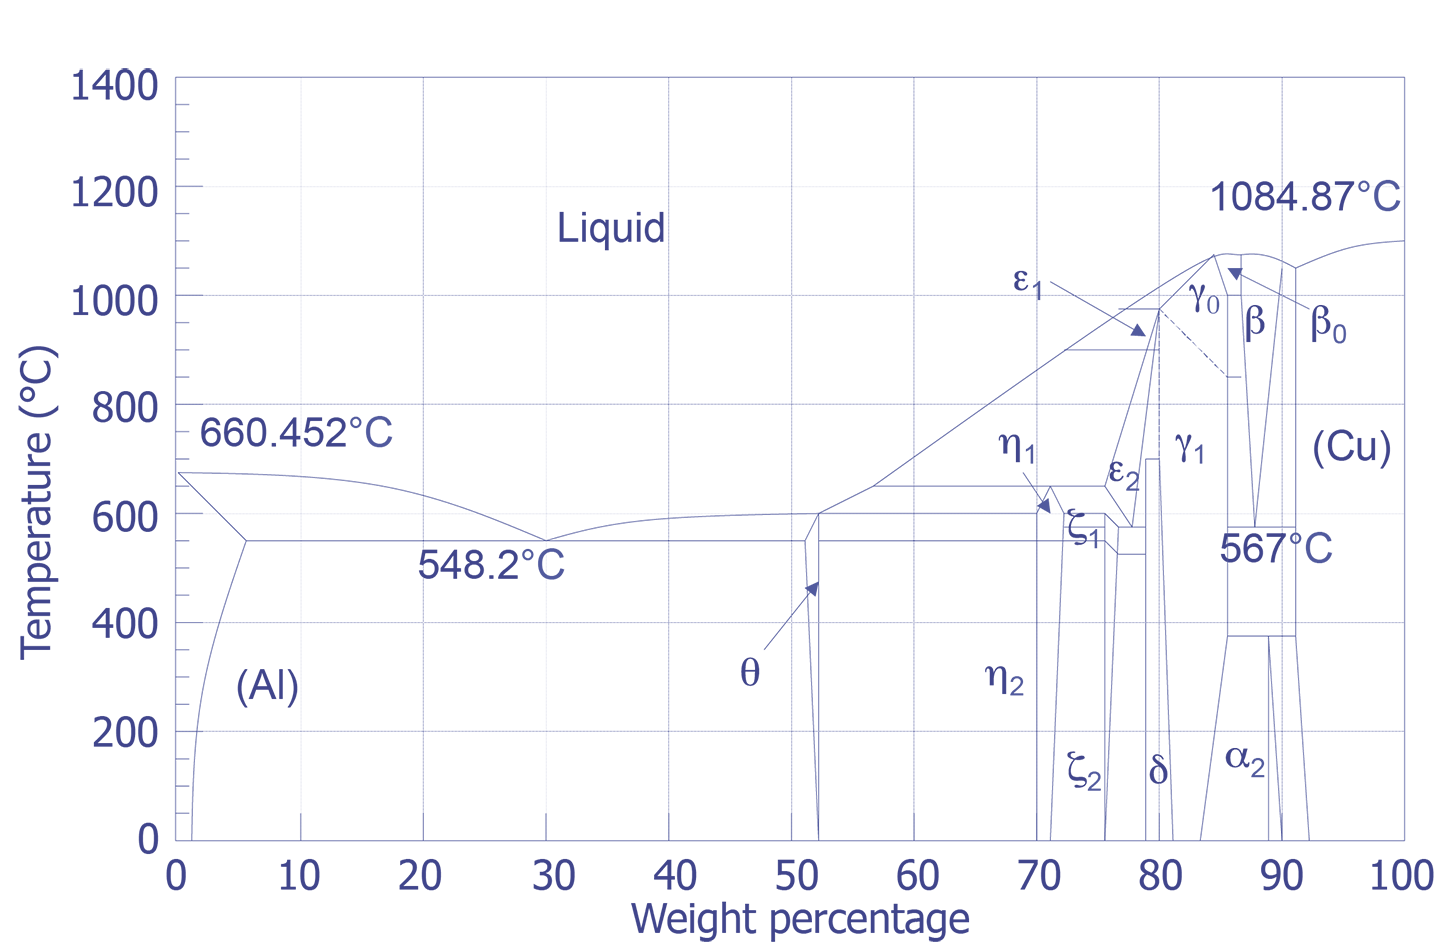 Aluminum - Copper Phase Diagram.